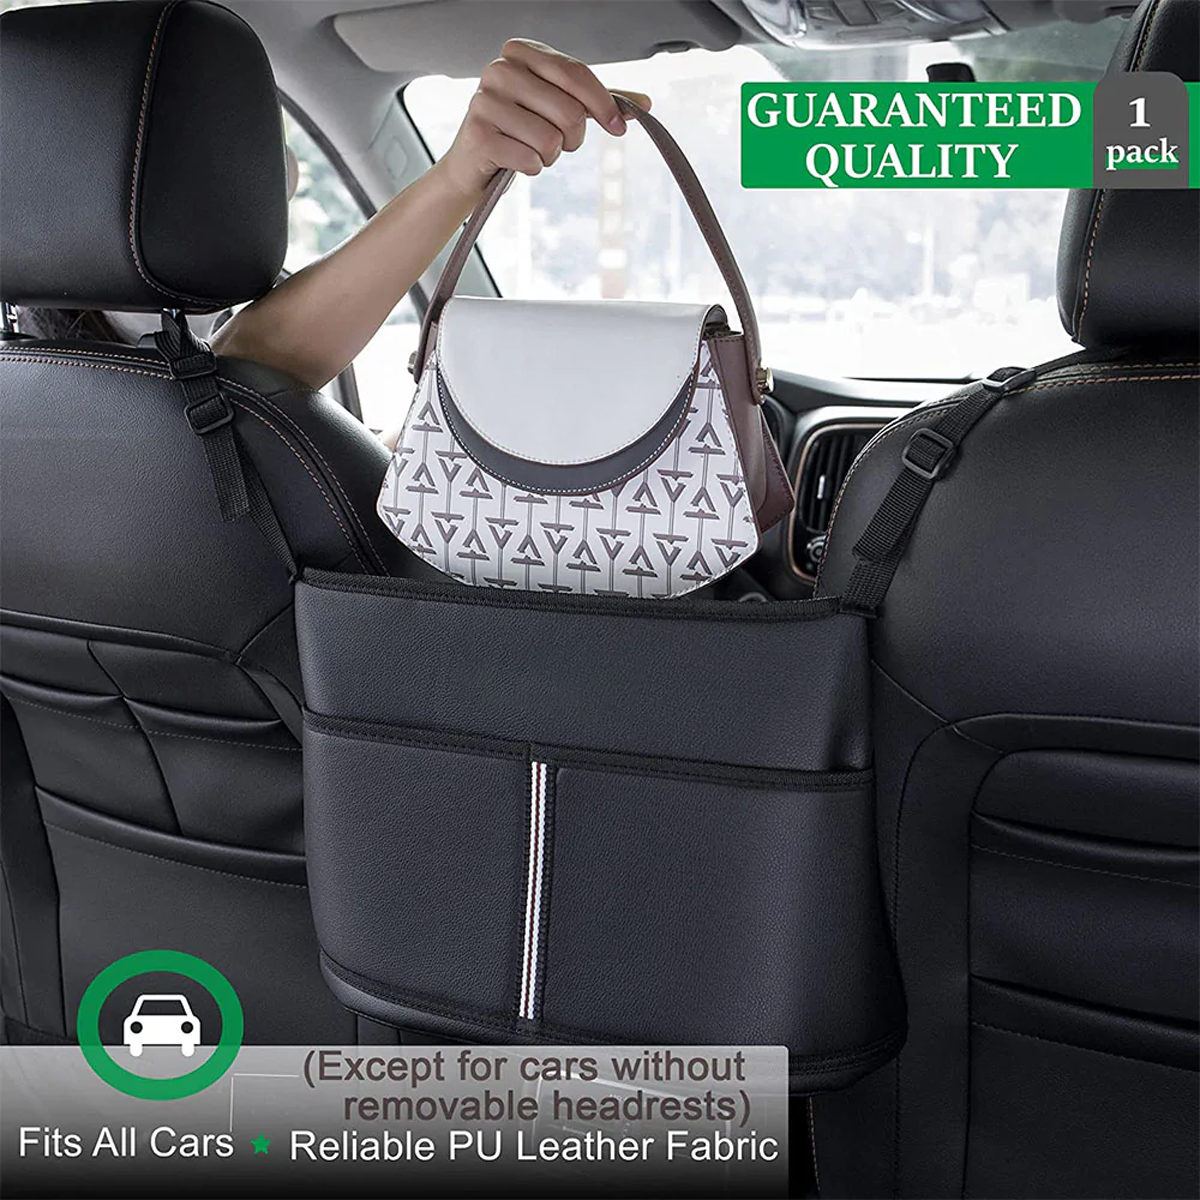 Car Purse Holder for Car Handbag Holder Between Seats Premium PU Leather, Custom Fit For Car, Hanging Car Purse Storage Pocket Back Seat Pet Barrier WAFM223